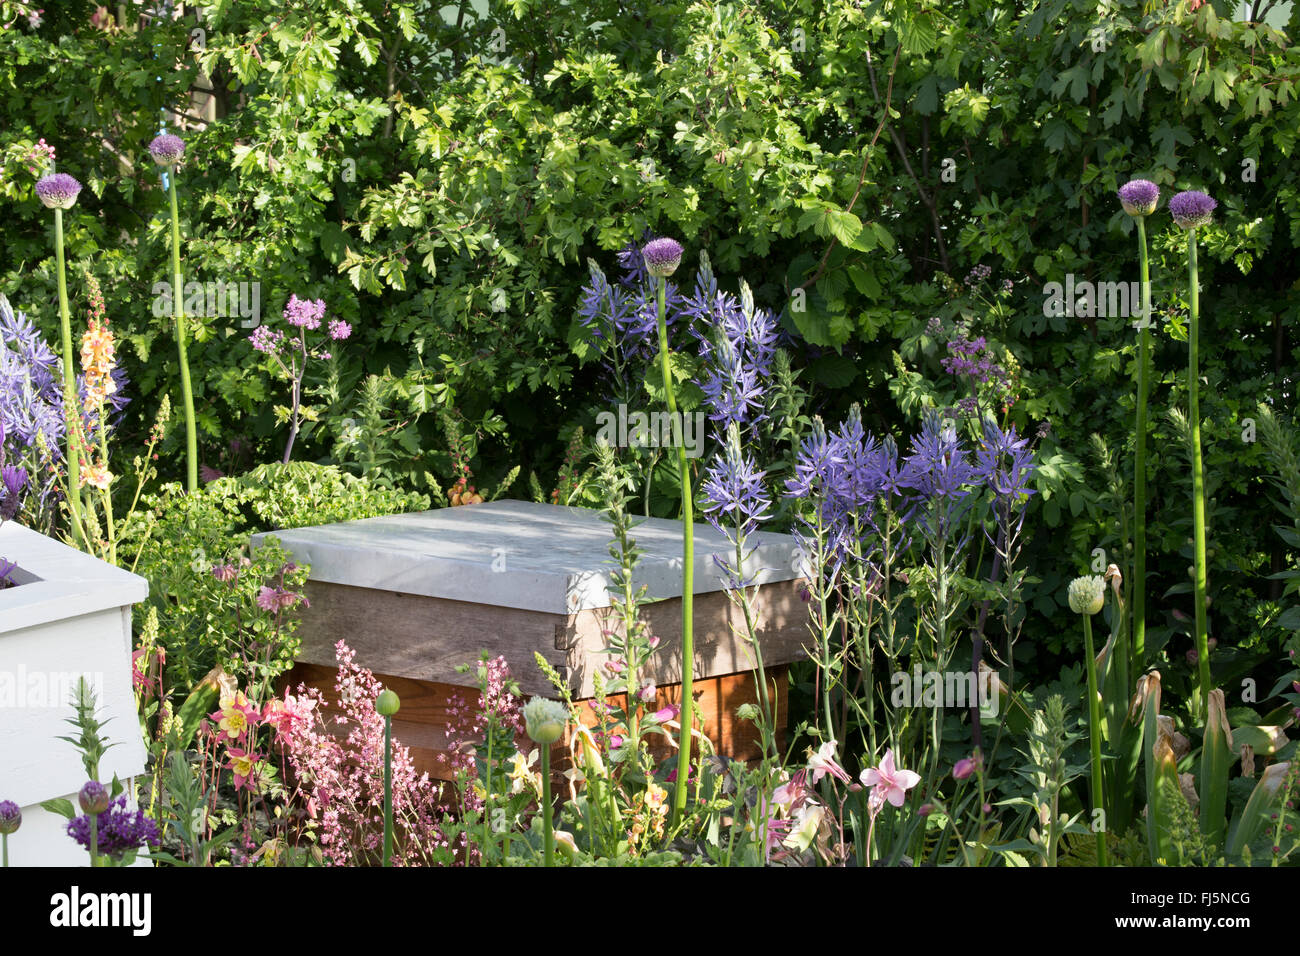 Petit jardin urbain convivial avec ruche dans une fleur Lit pour les abeilles plantation d'Alliums - Camassia leichtlinii Angleterre GB ROYAUME-UNI Banque D'Images